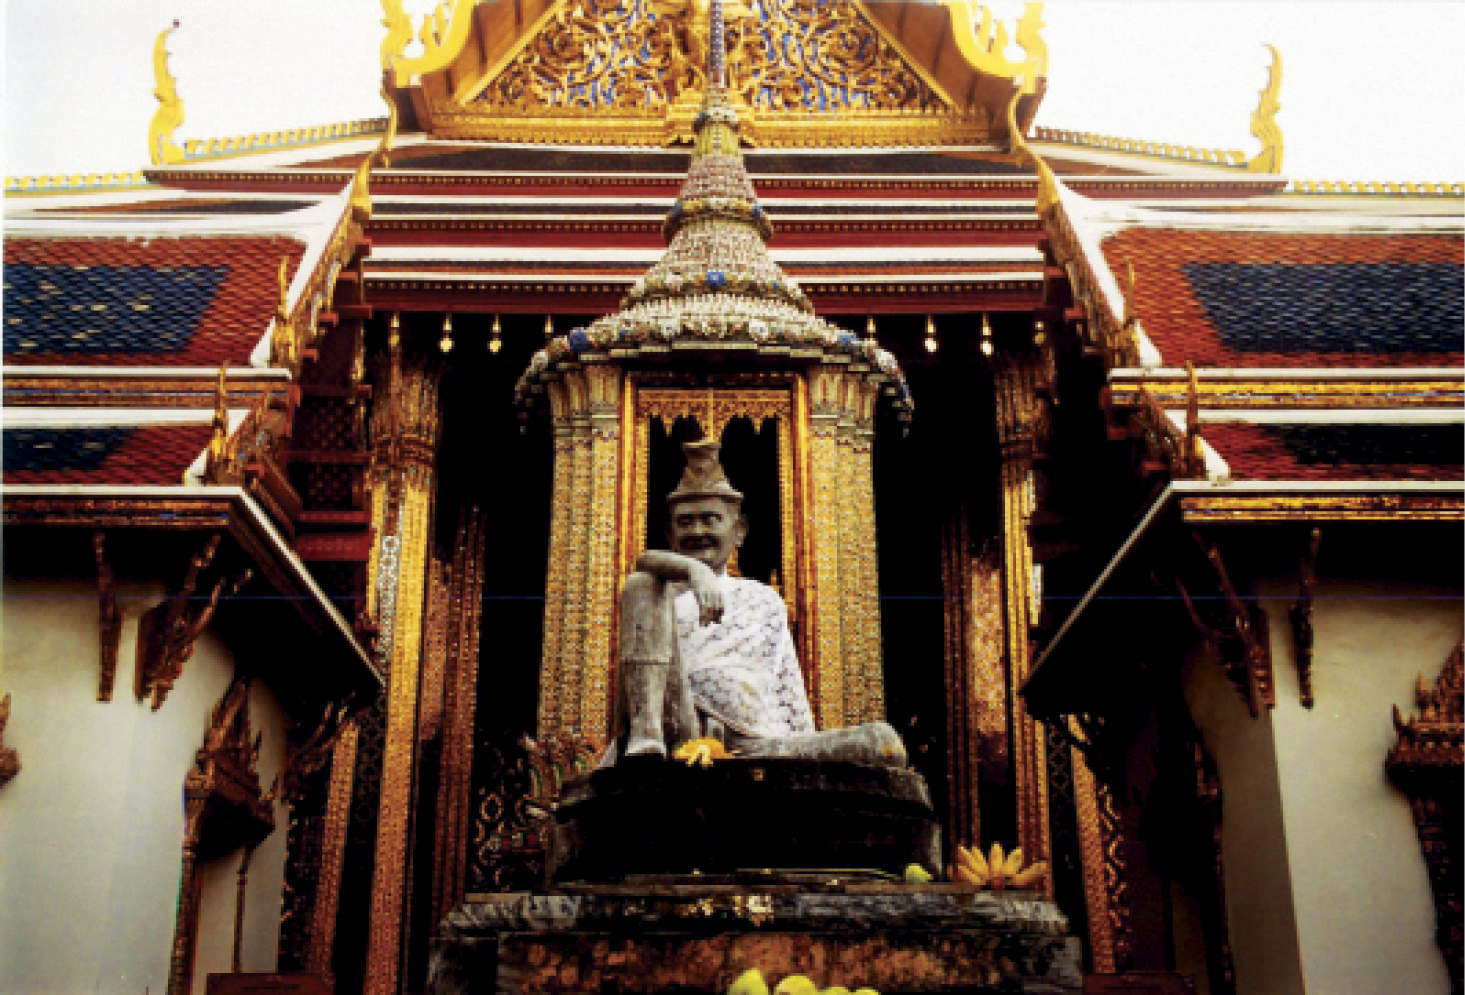 Tượng Jīvaka tại ngôi đền quốc gia Thái Lan (Wat Phra Kaew). (Ảnh: Dr. Salguero)